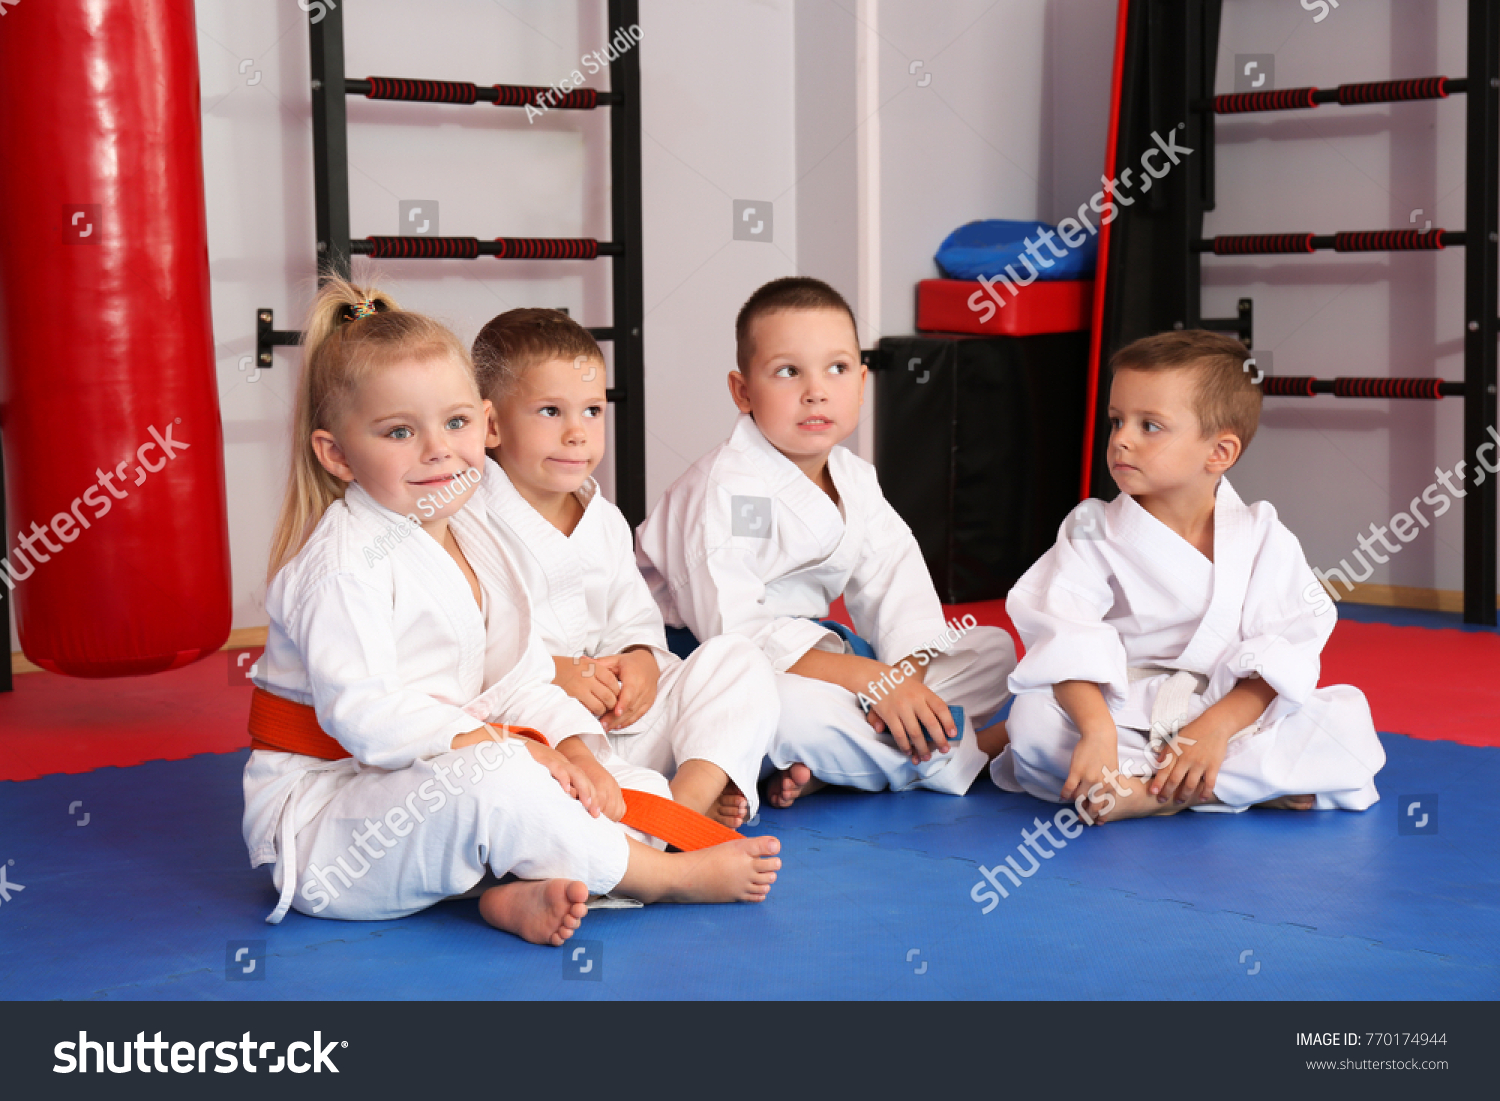 Little children wearing karategi in dojo #770174944